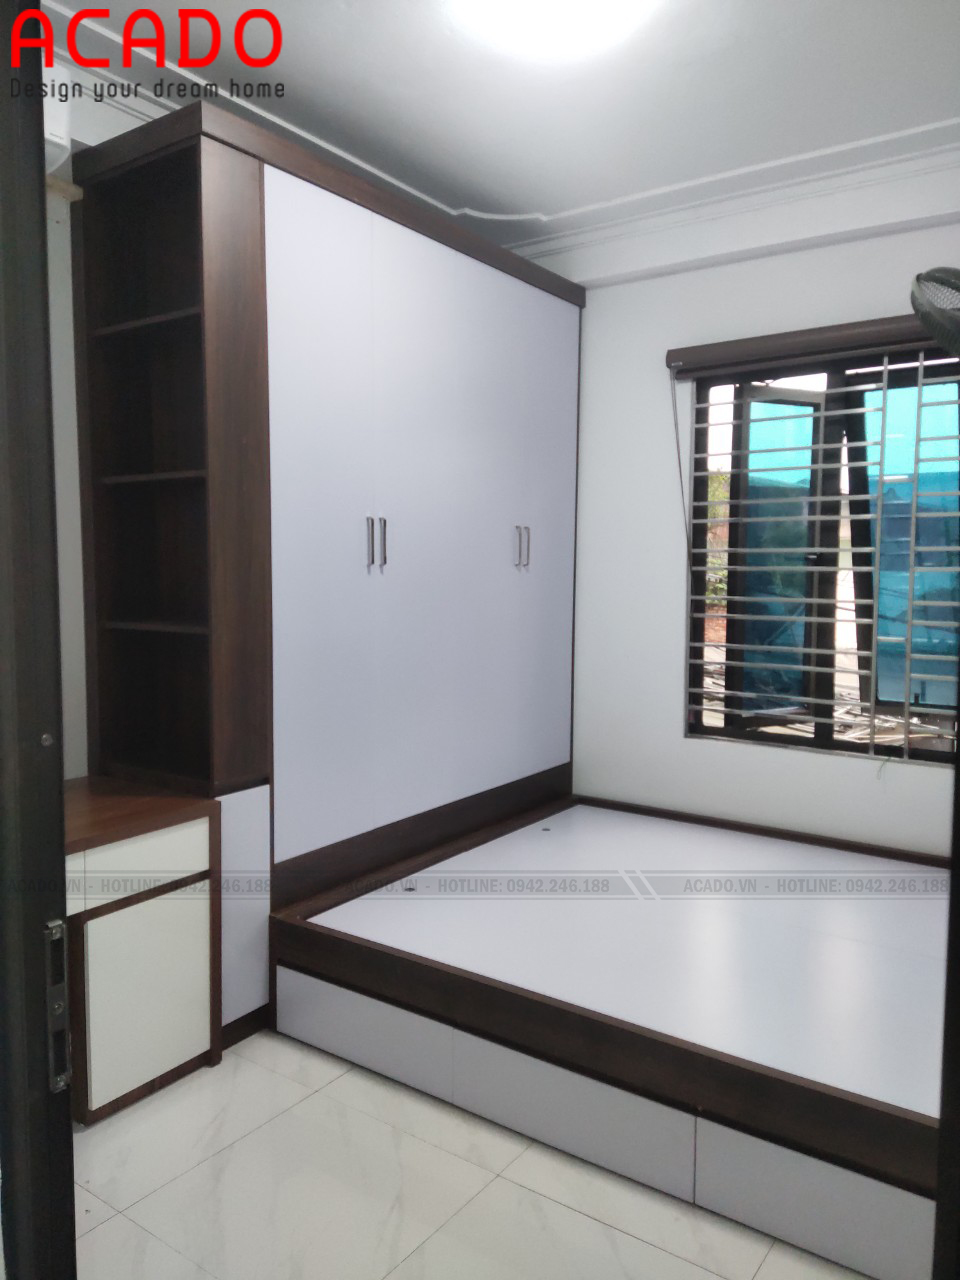 Tủ quần áo gỗ công nghiệp chống ẩm tuyệt đối - Lắp đặt nội thất tại Thanh Trì